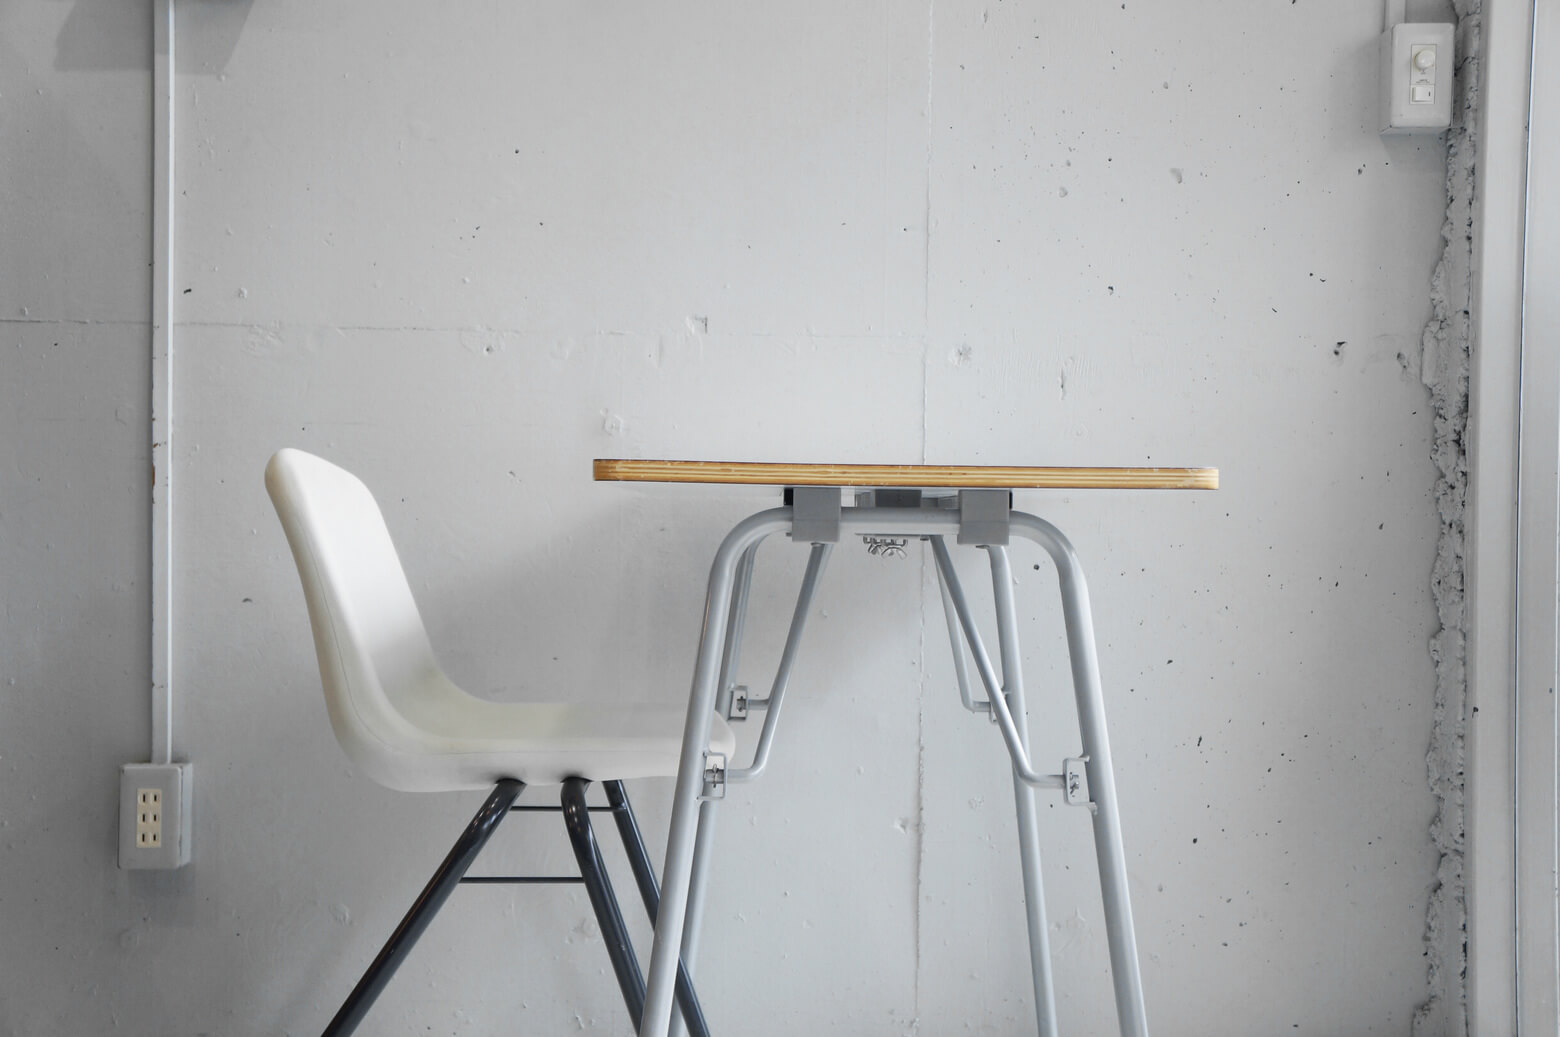 MUJI Folding table / 無印良品 折りたたみテーブル 廃盤